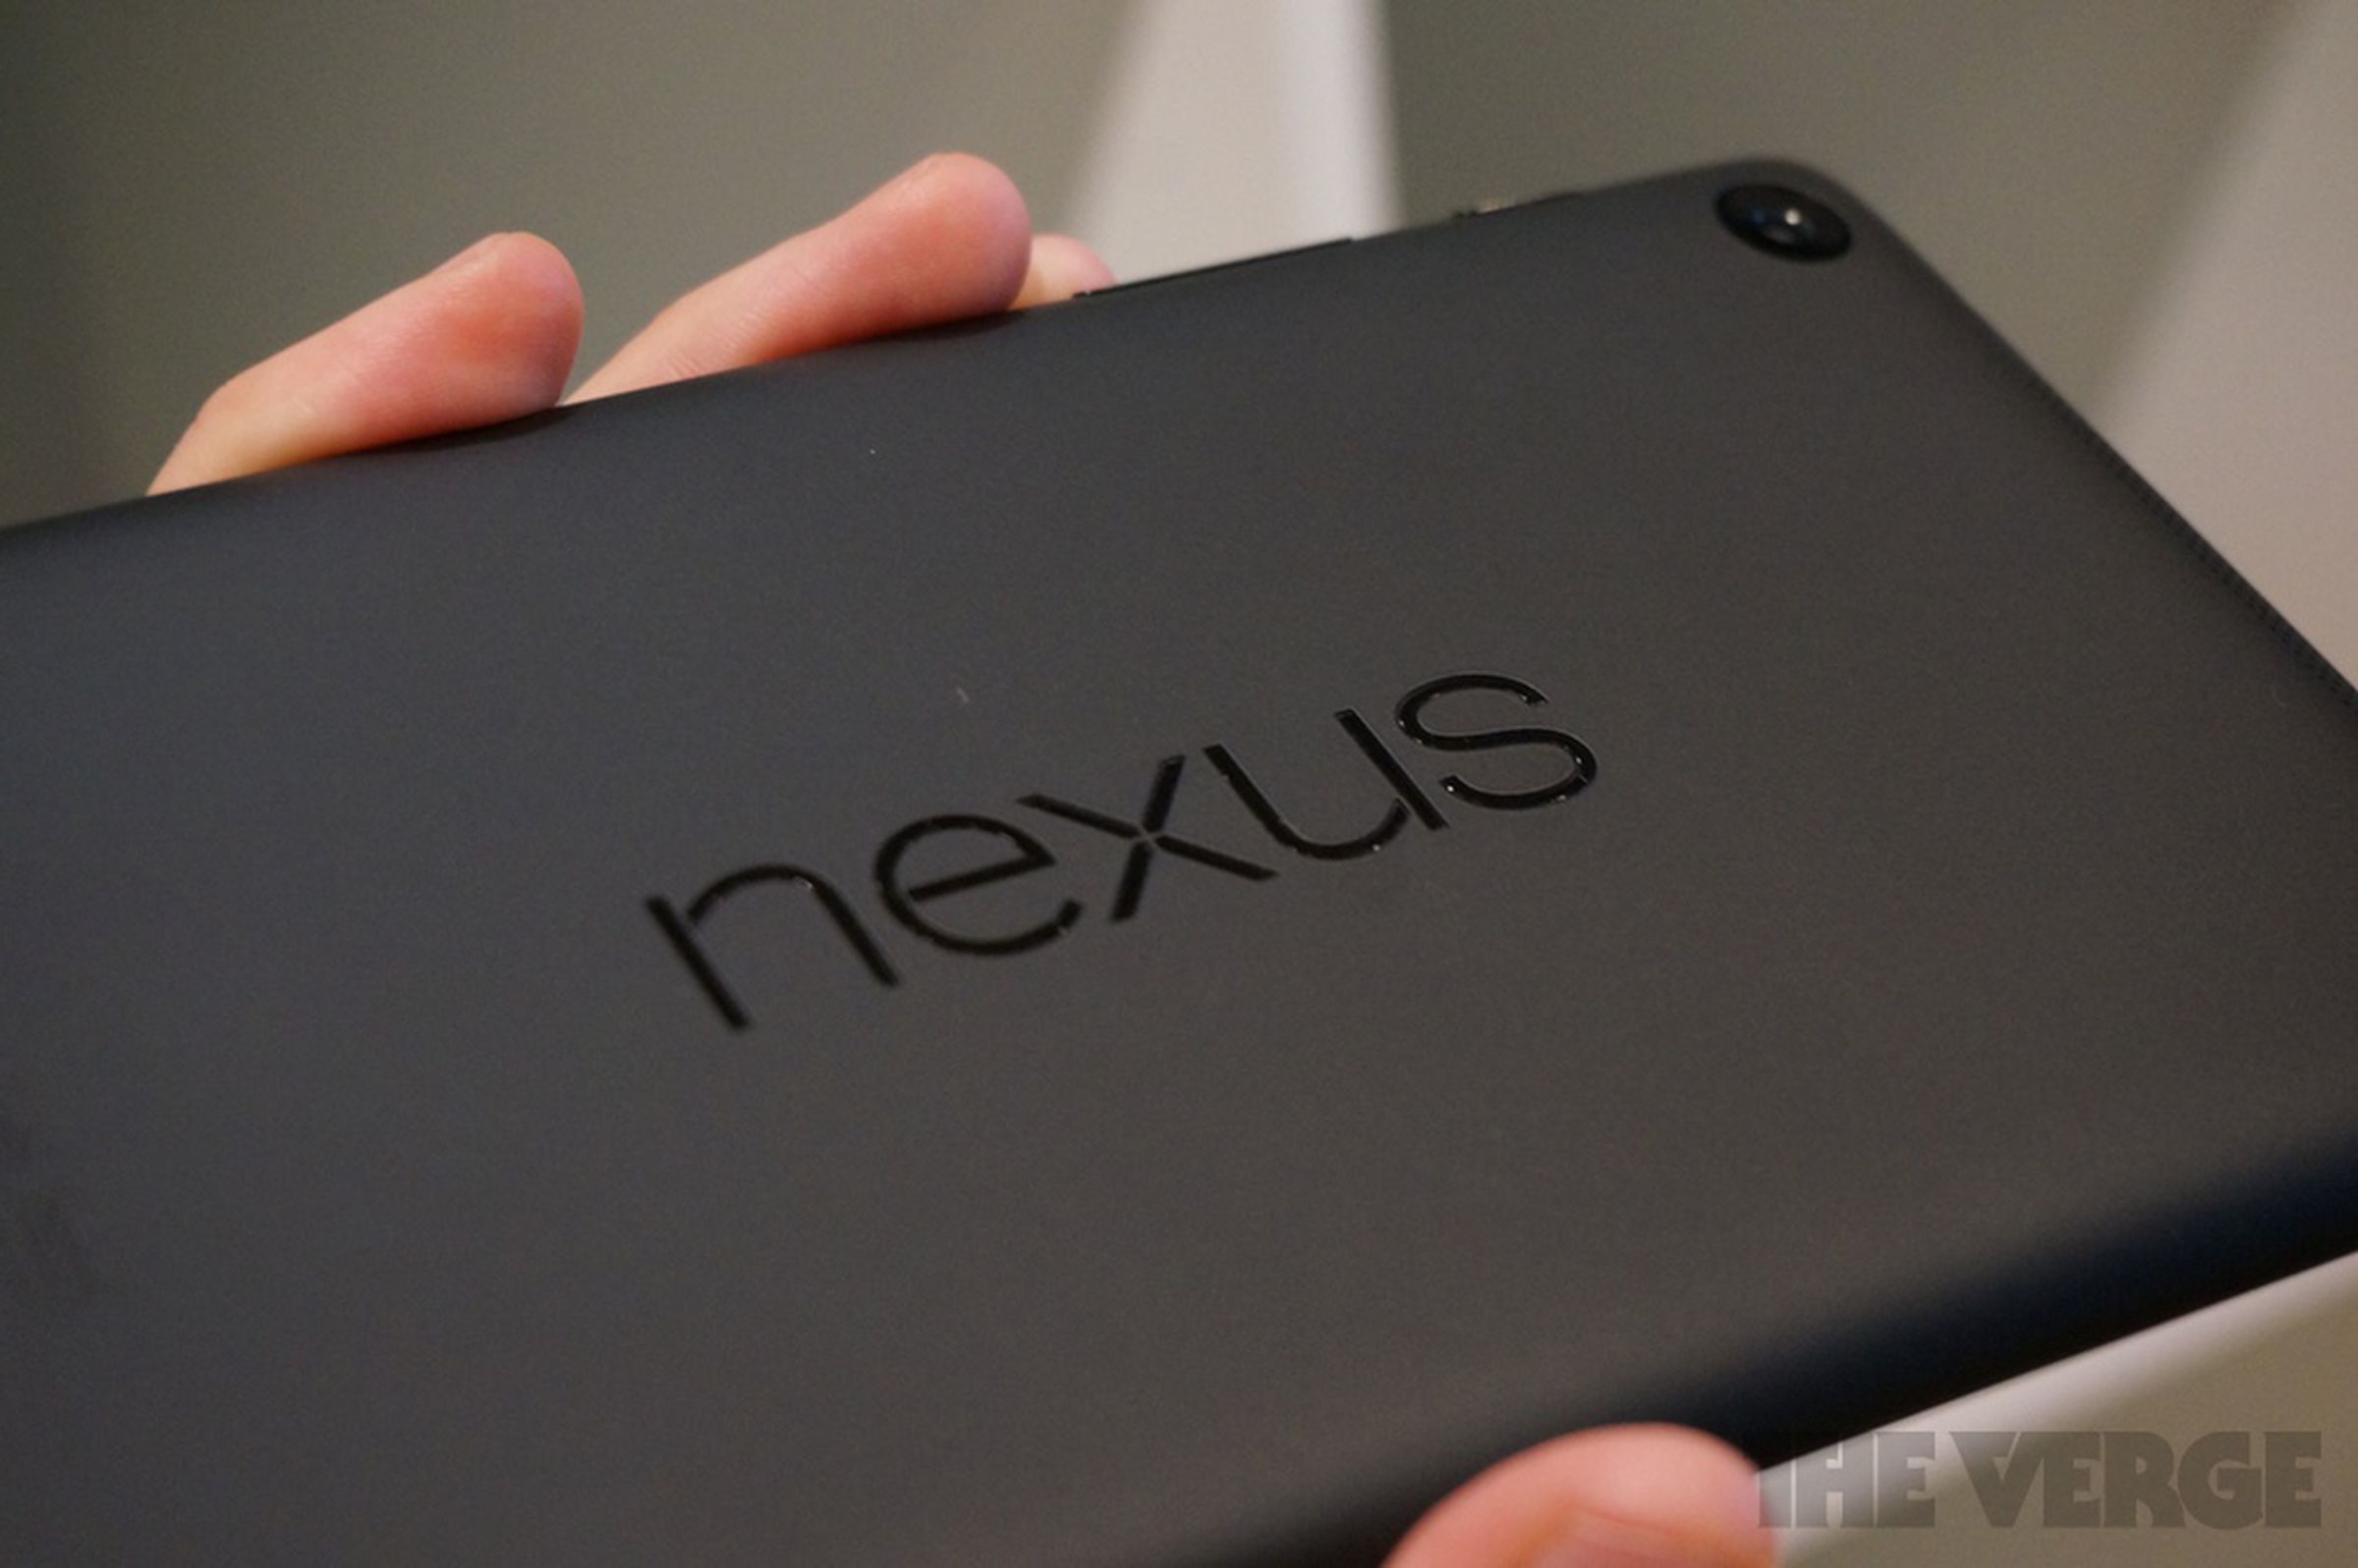 Nexus 7 hands-on photos